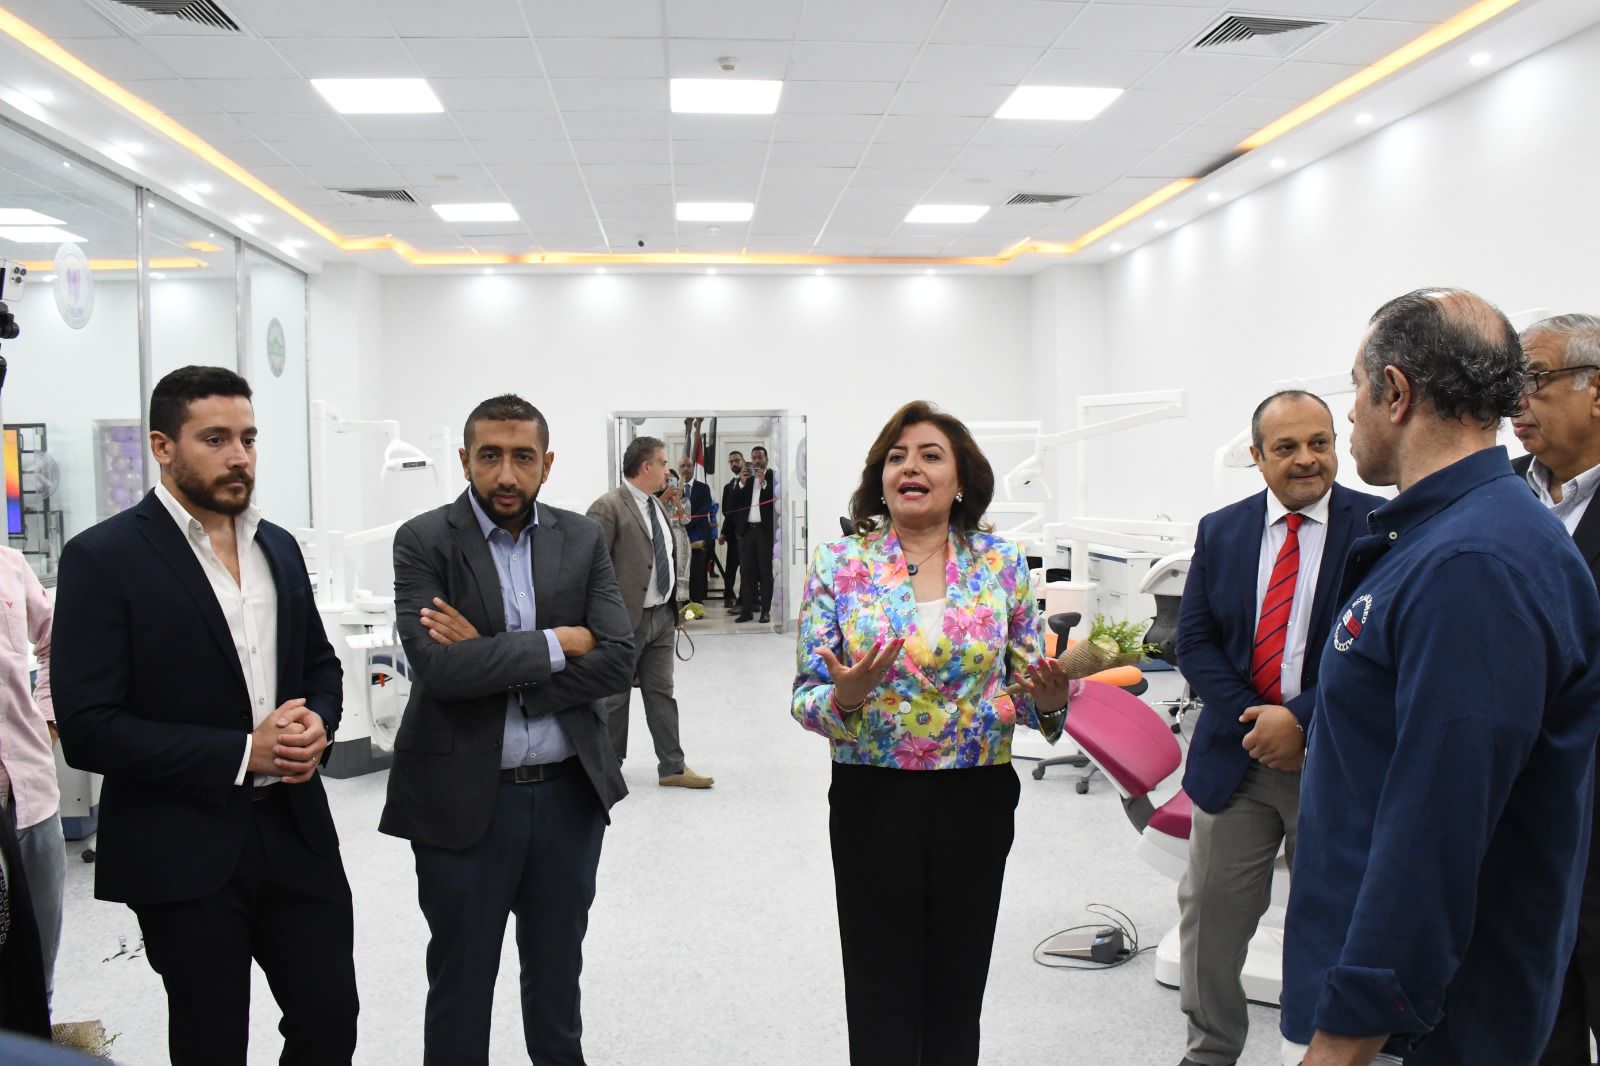 إفتتاح أول معمل رقمى على مستوى الجمهورية بكلية طب الأسنان بجامعة مصر للعلوم والتكنولوجيا (1)